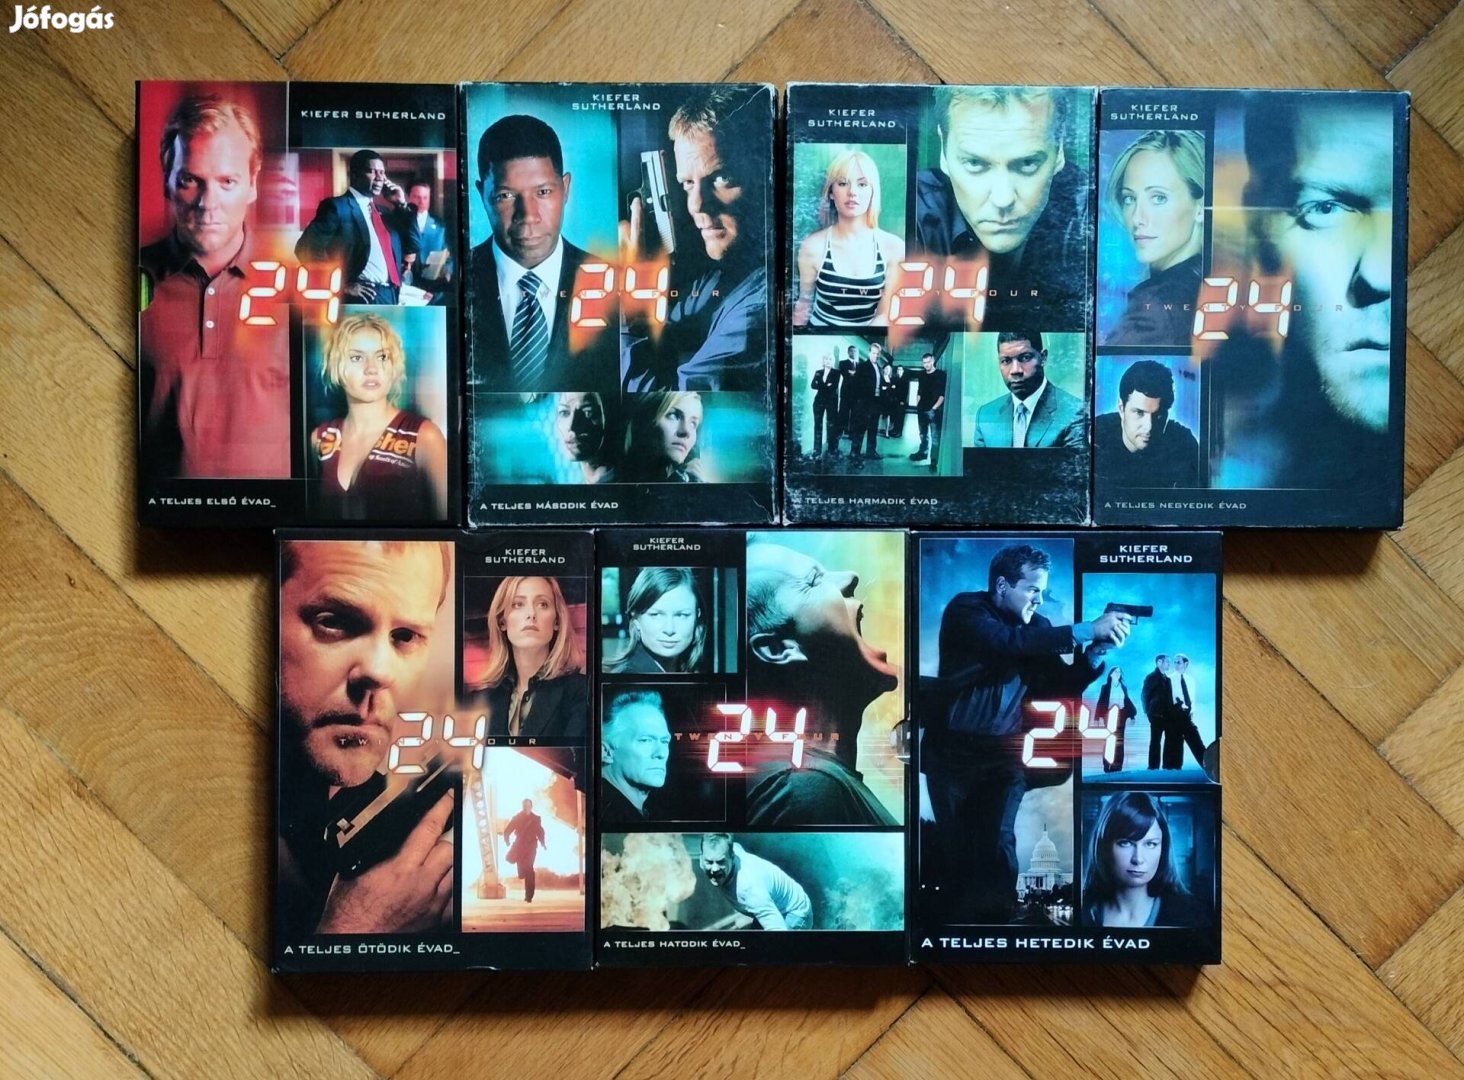 24 sorozat 1-7 évad egyben 4999 Ft  Kiefer Sutherland felíratos